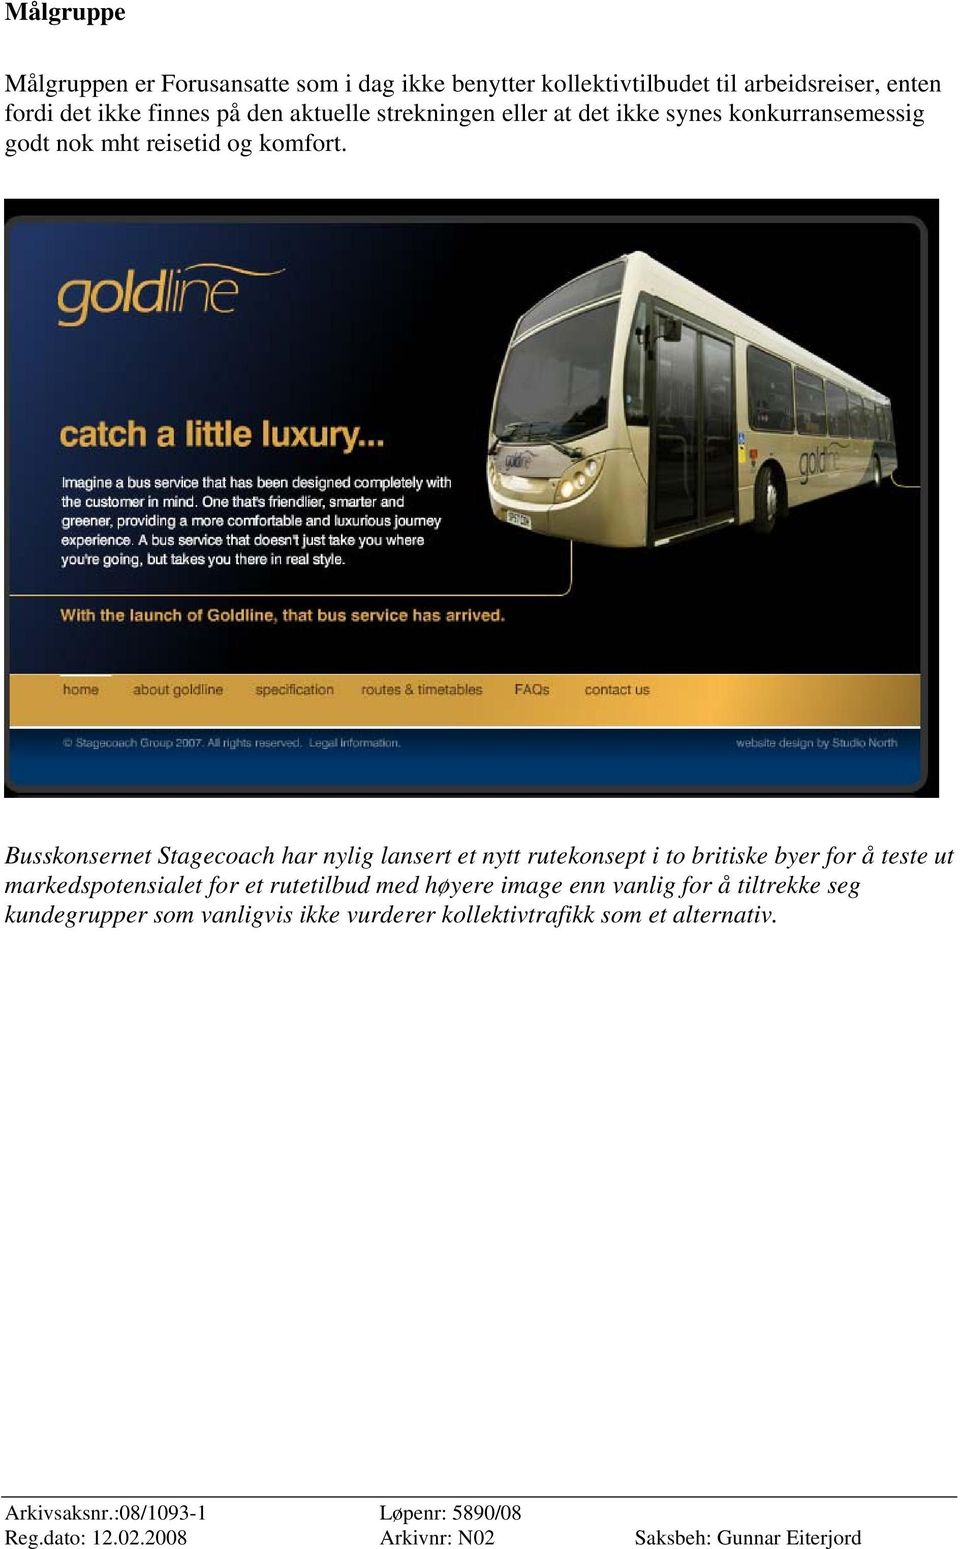 Busskonsernet Stagecoach har nylig lansert et nytt rutekonsept i to britiske byer for å teste ut markedspotensialet for et rutetilbud med høyere